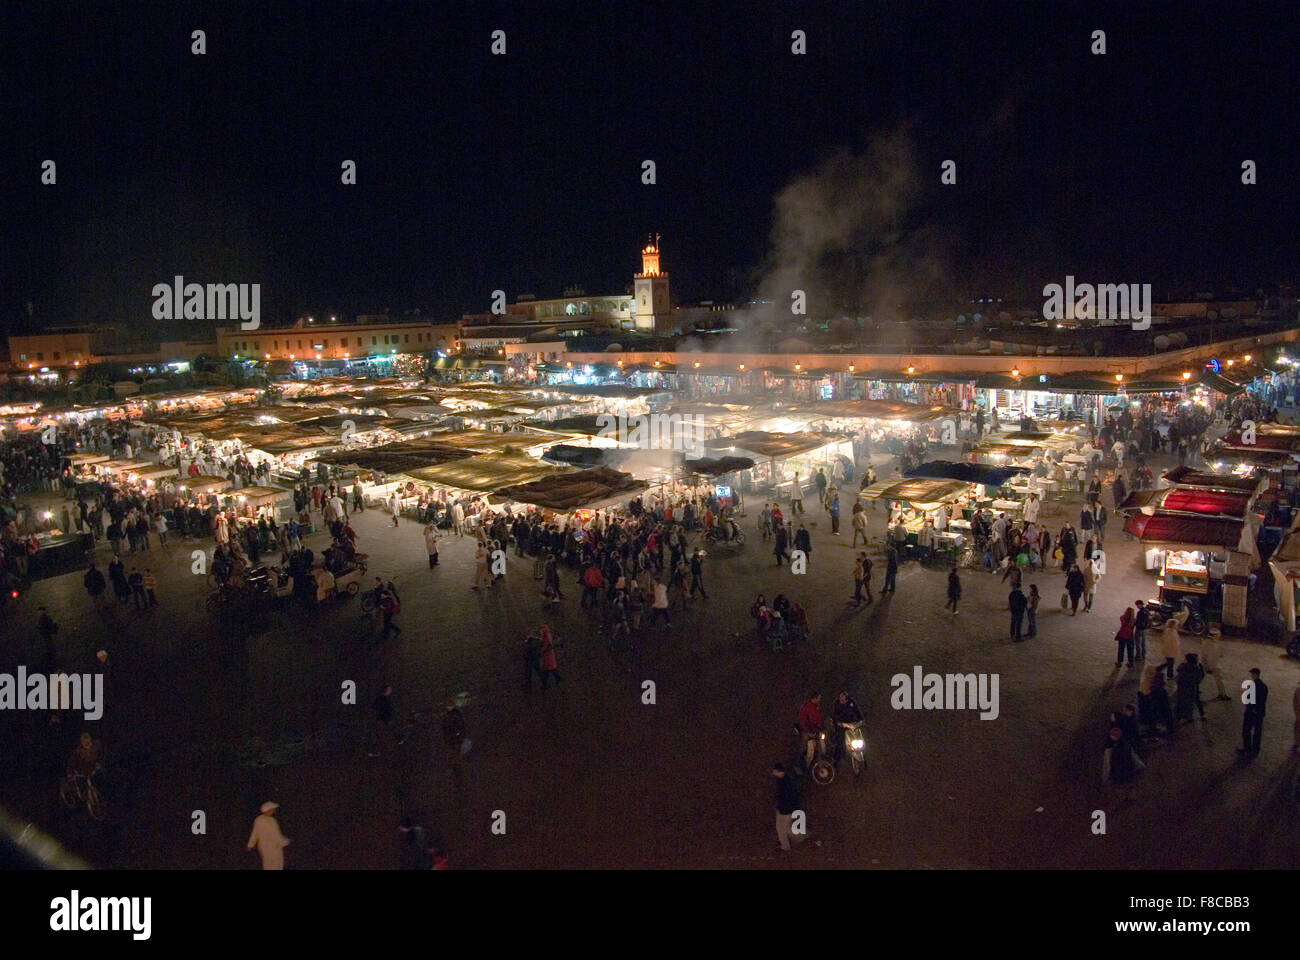 Piazza principale Piazza Jemaa El Fnaa di Marrakech di notte pranzo con stand gastronomici, fumo oltre le luci, la moschea in background Foto Stock